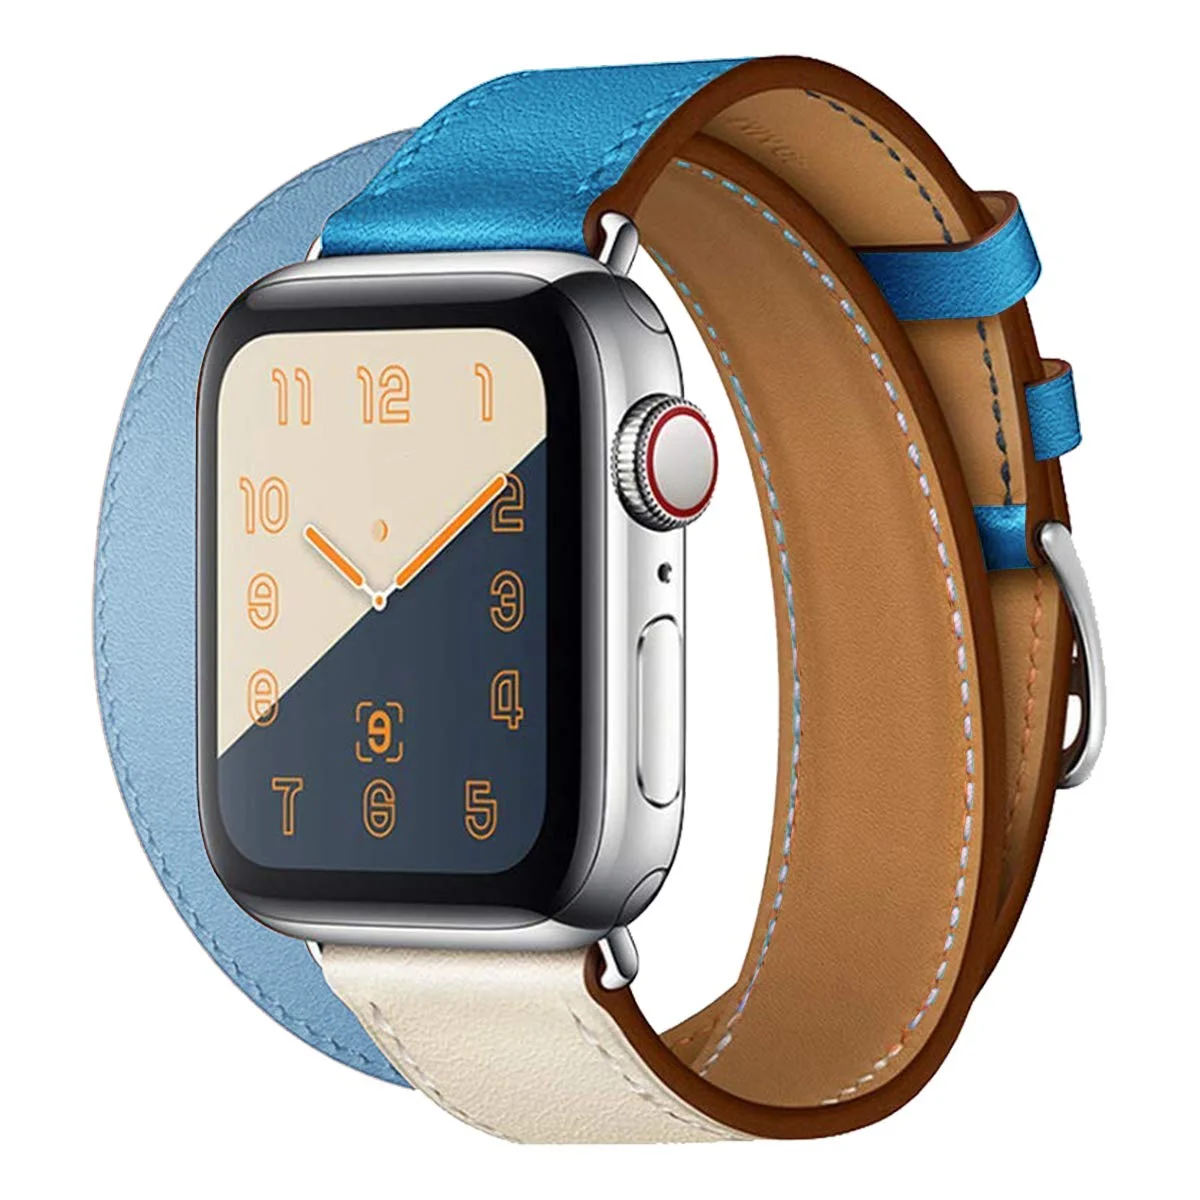 Řemínek iMore Double Tour Apple Watch Series 4/5/6/SE (40mm) - Béžový/Modrý